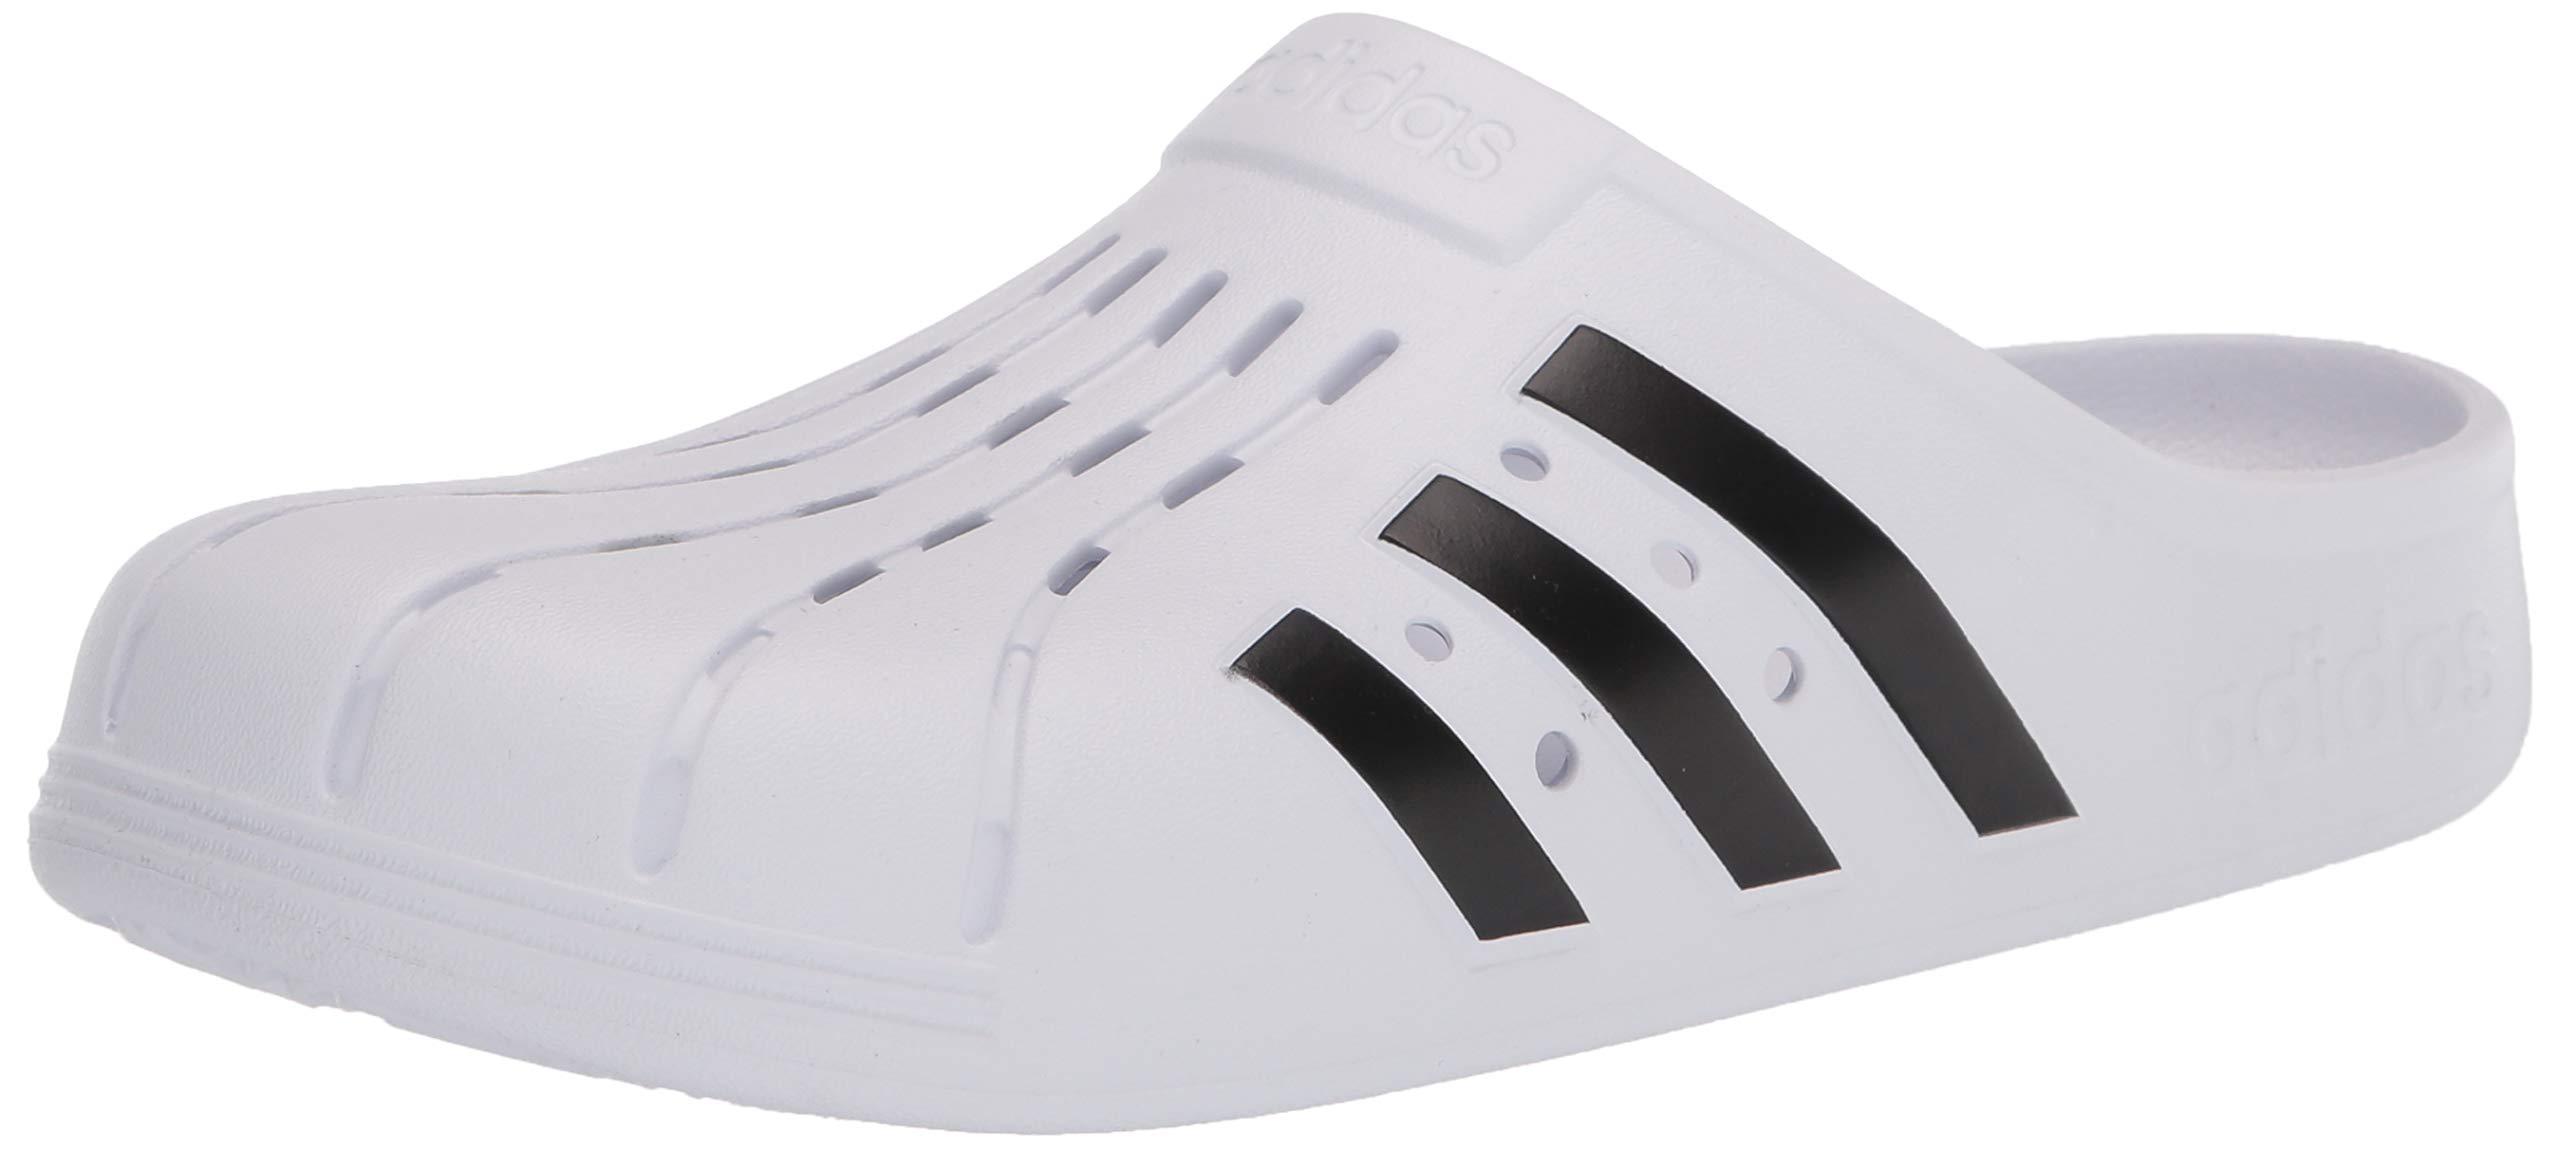 adidas Adilette Clog Slide Sandal in White/Black/White (White) - Save 31% -  Lyst